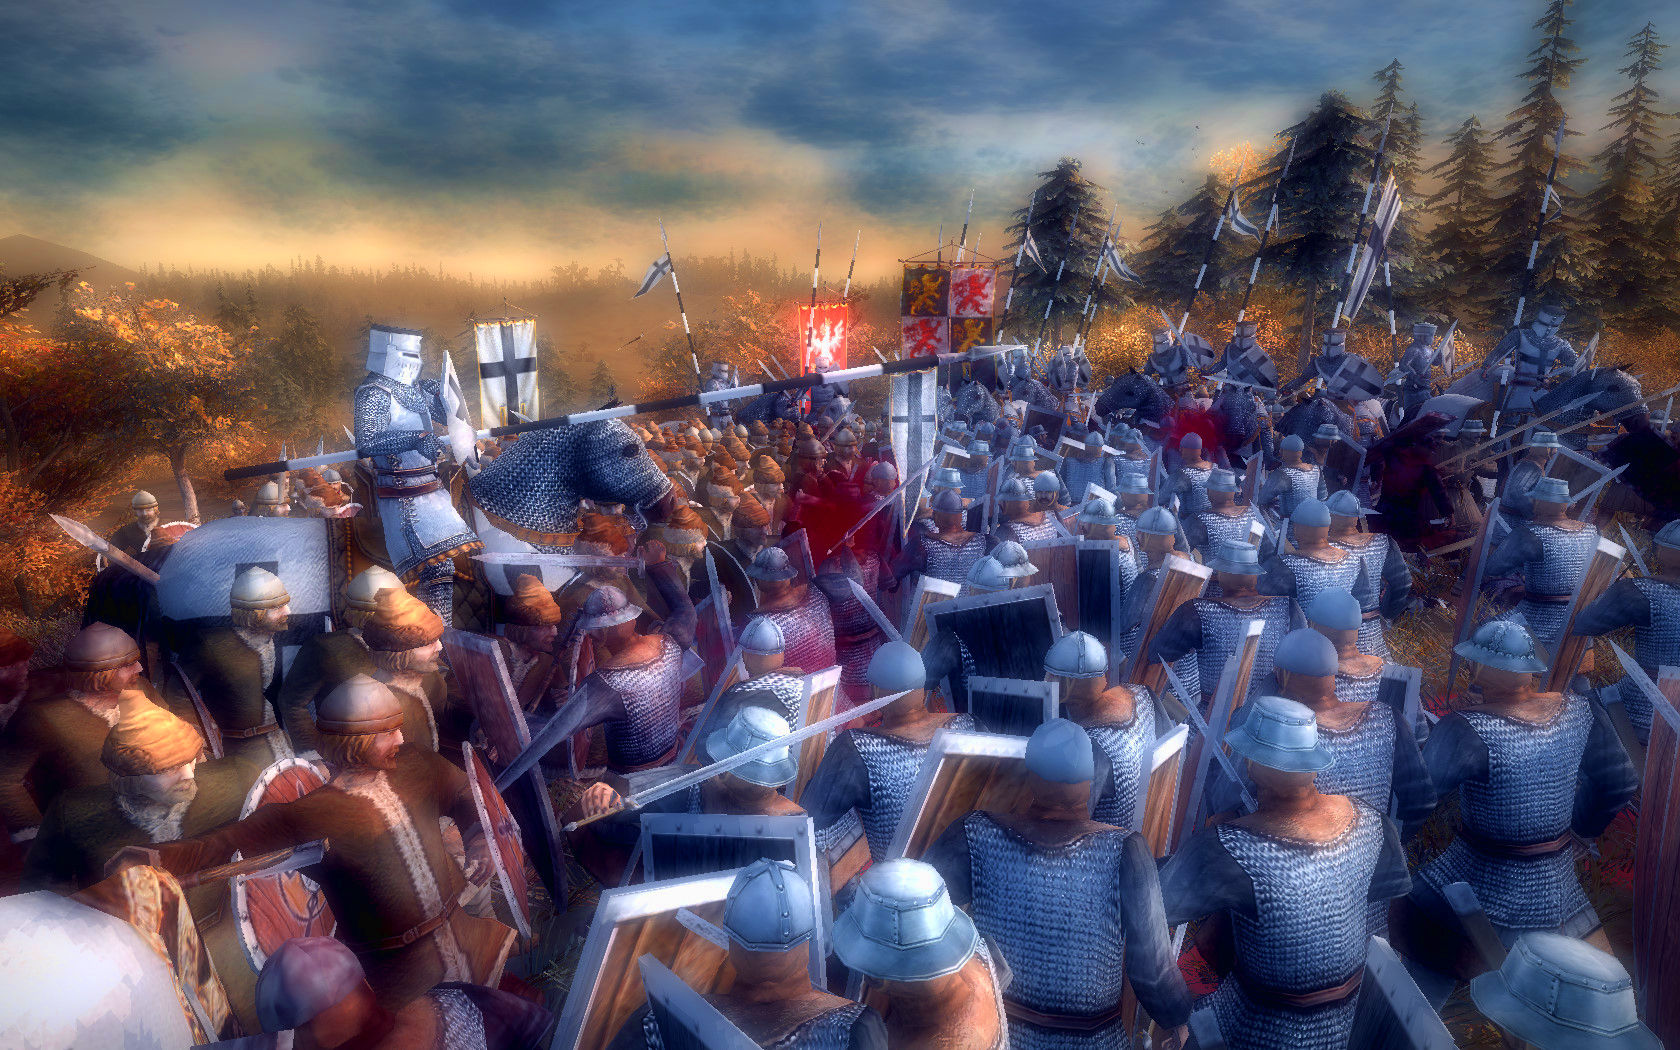 真實戰爭2：北方十字軍